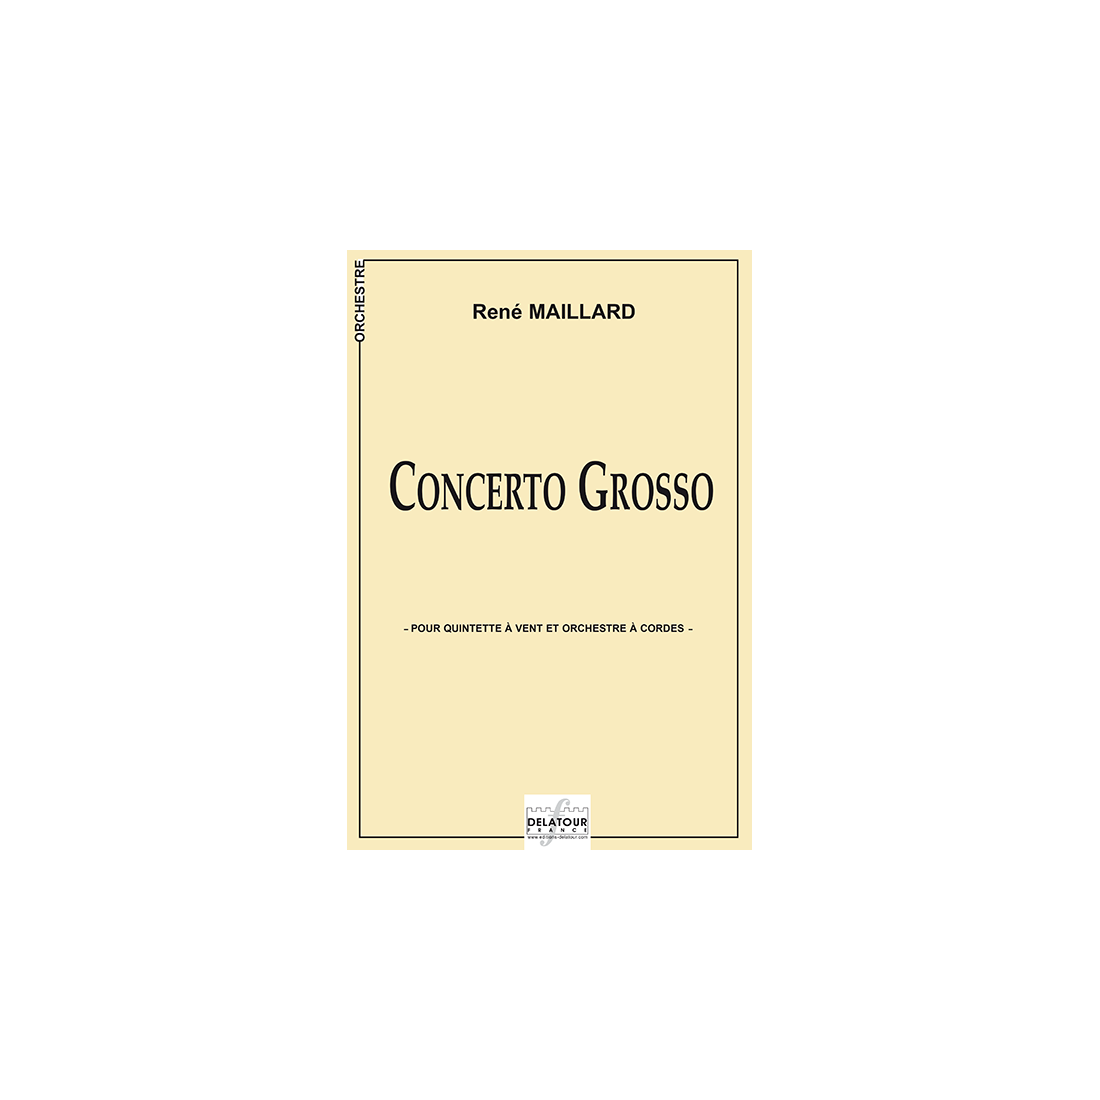 Concerto grosso pour quintette à vent et orchestre à cordes - Parties séparées